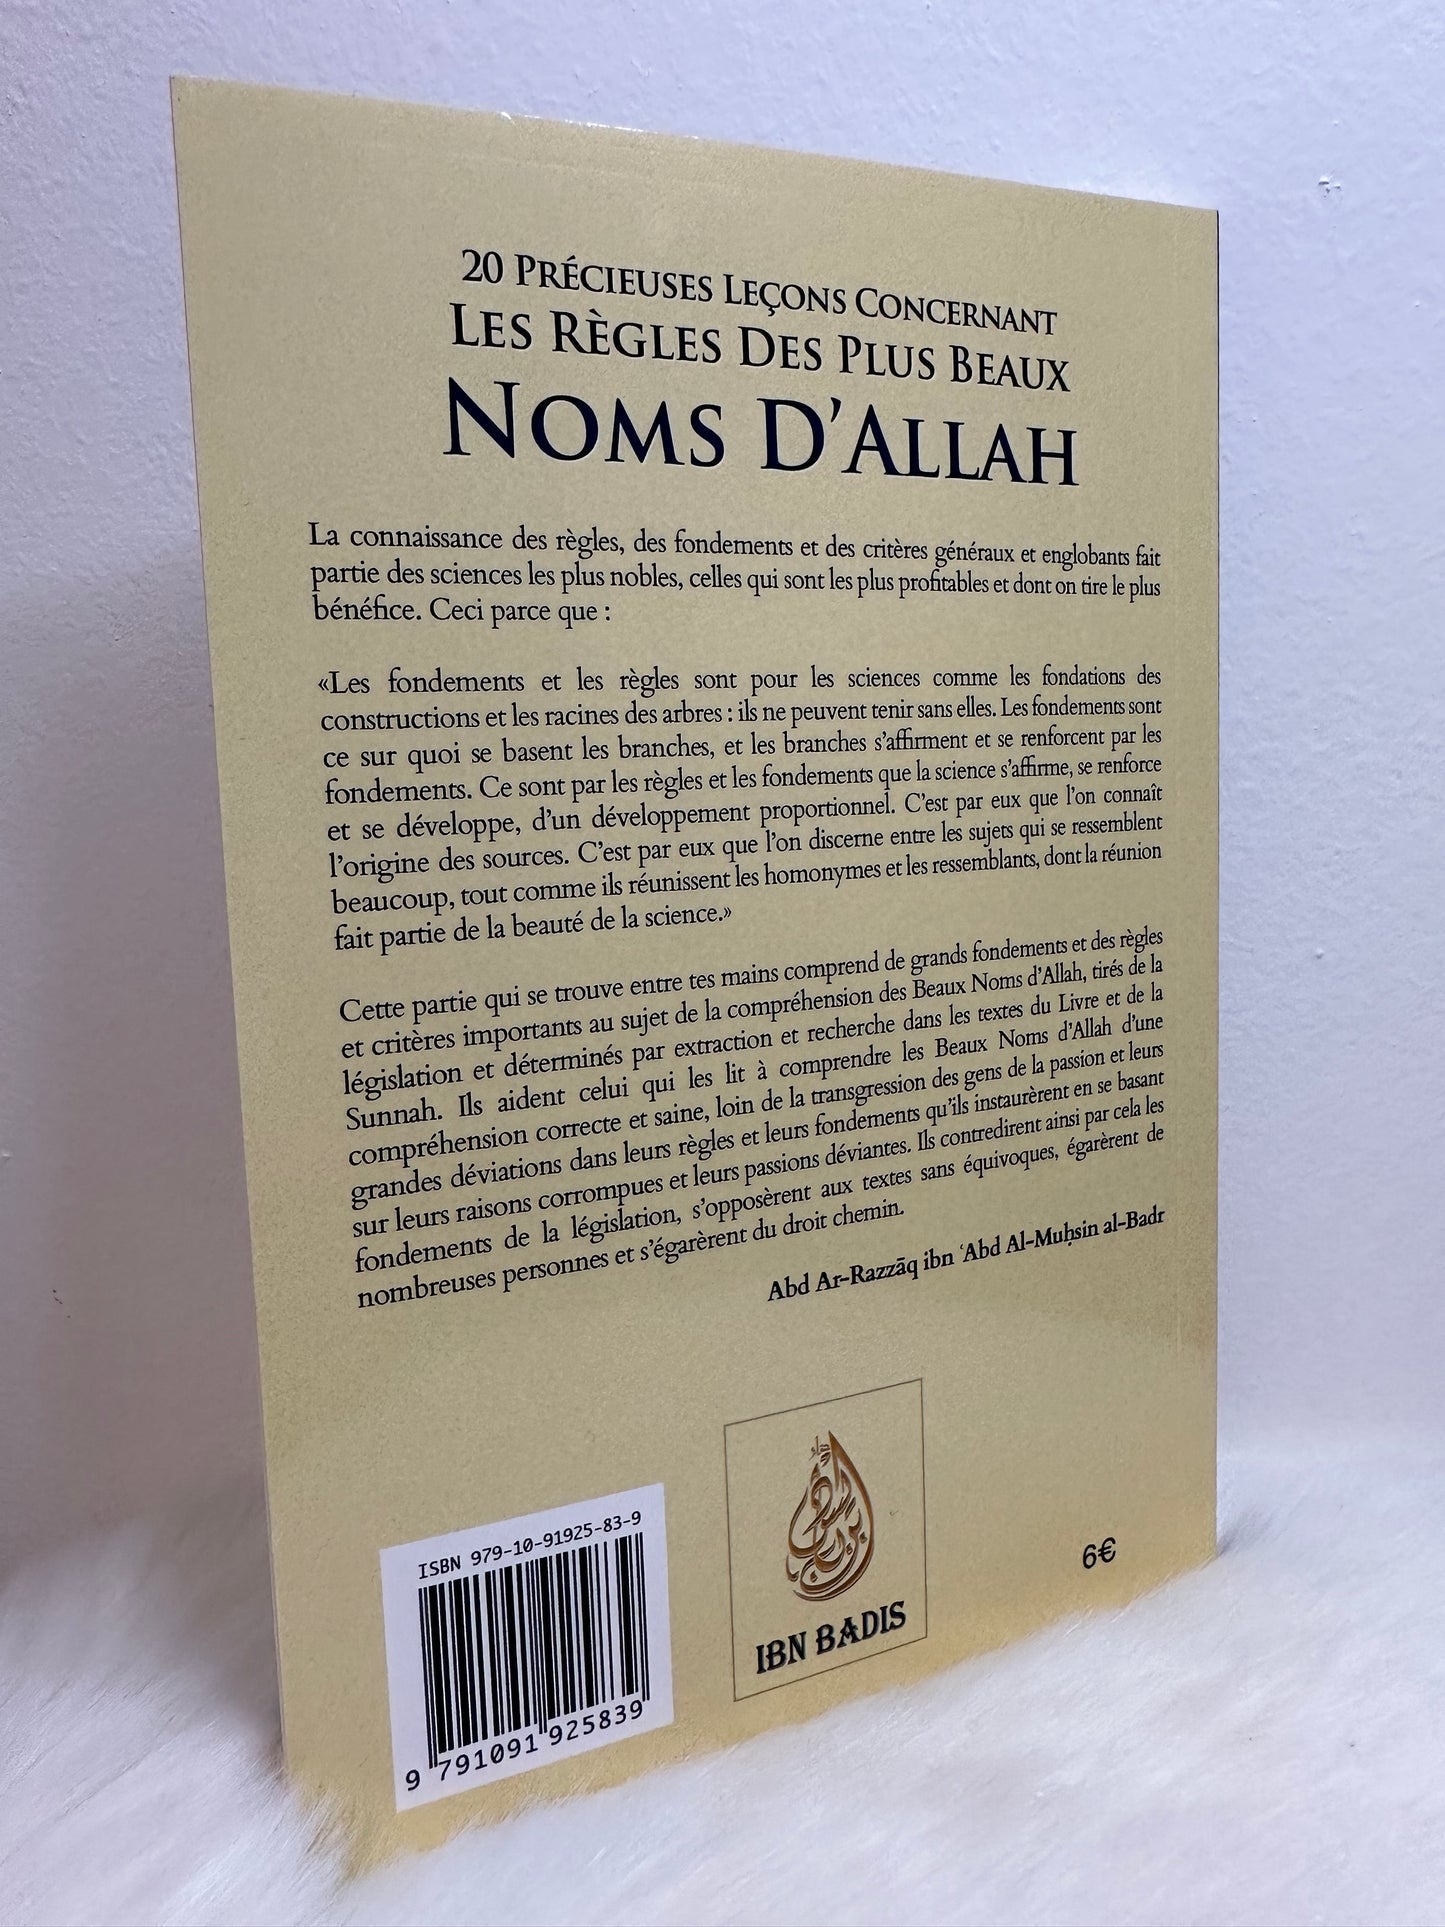 20 précieuses leçons concernant les règles des plus beaux noms d'Allah (Arabe/Français)